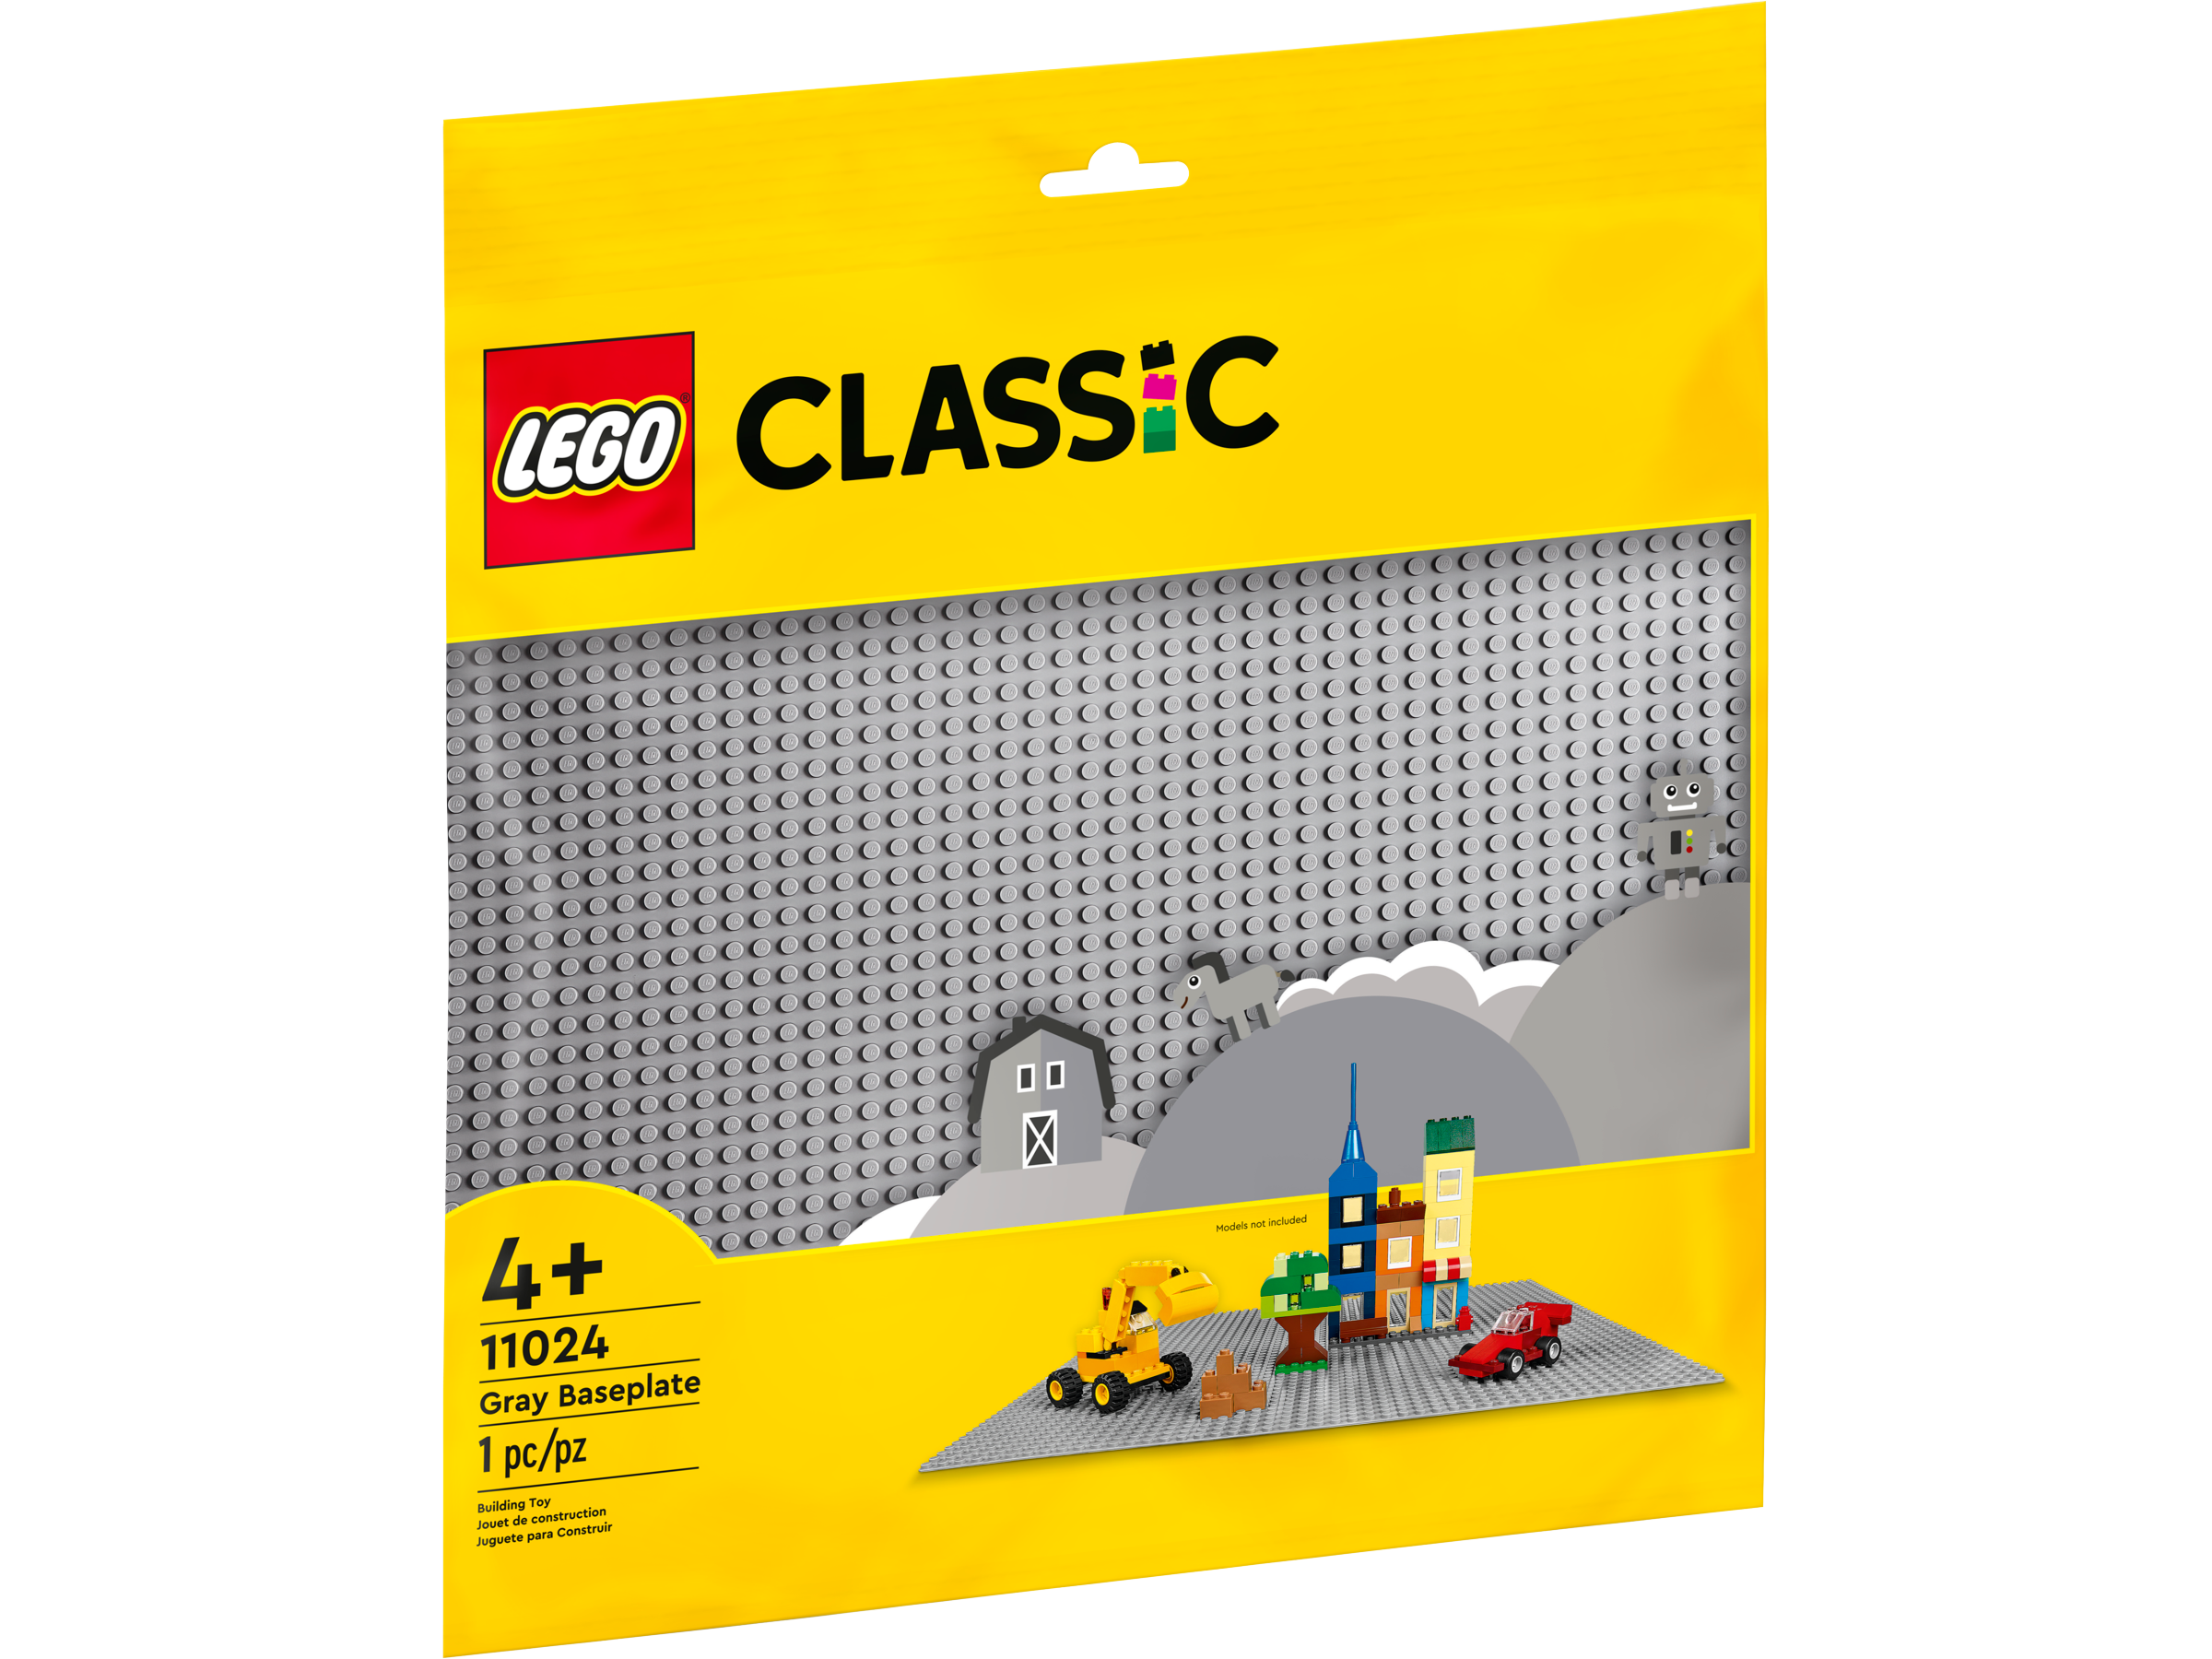 Plateaux Lego personnalisés, plaque de base Lego, plaque de base